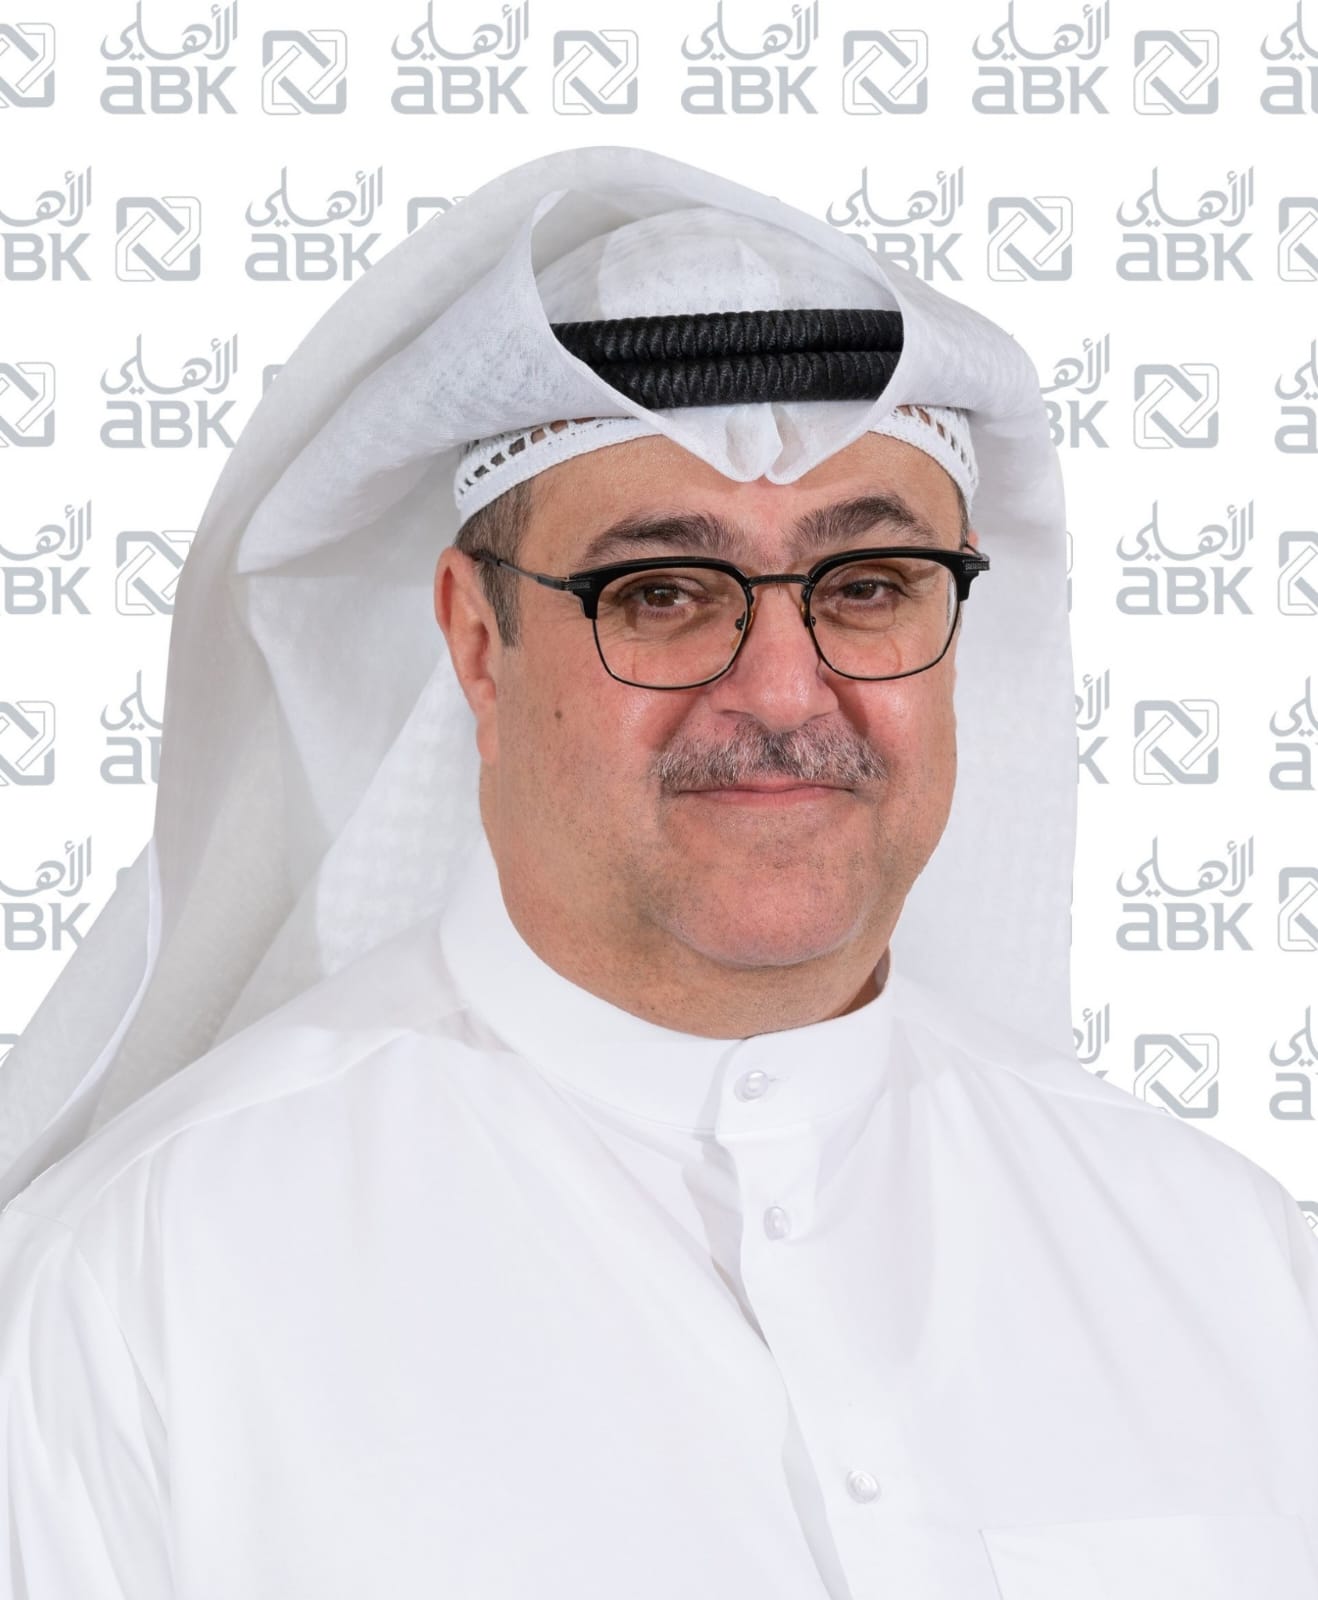  البنك الأهلي الكويتي يحذر من مخاطر التداول بالعملات الافتراضية